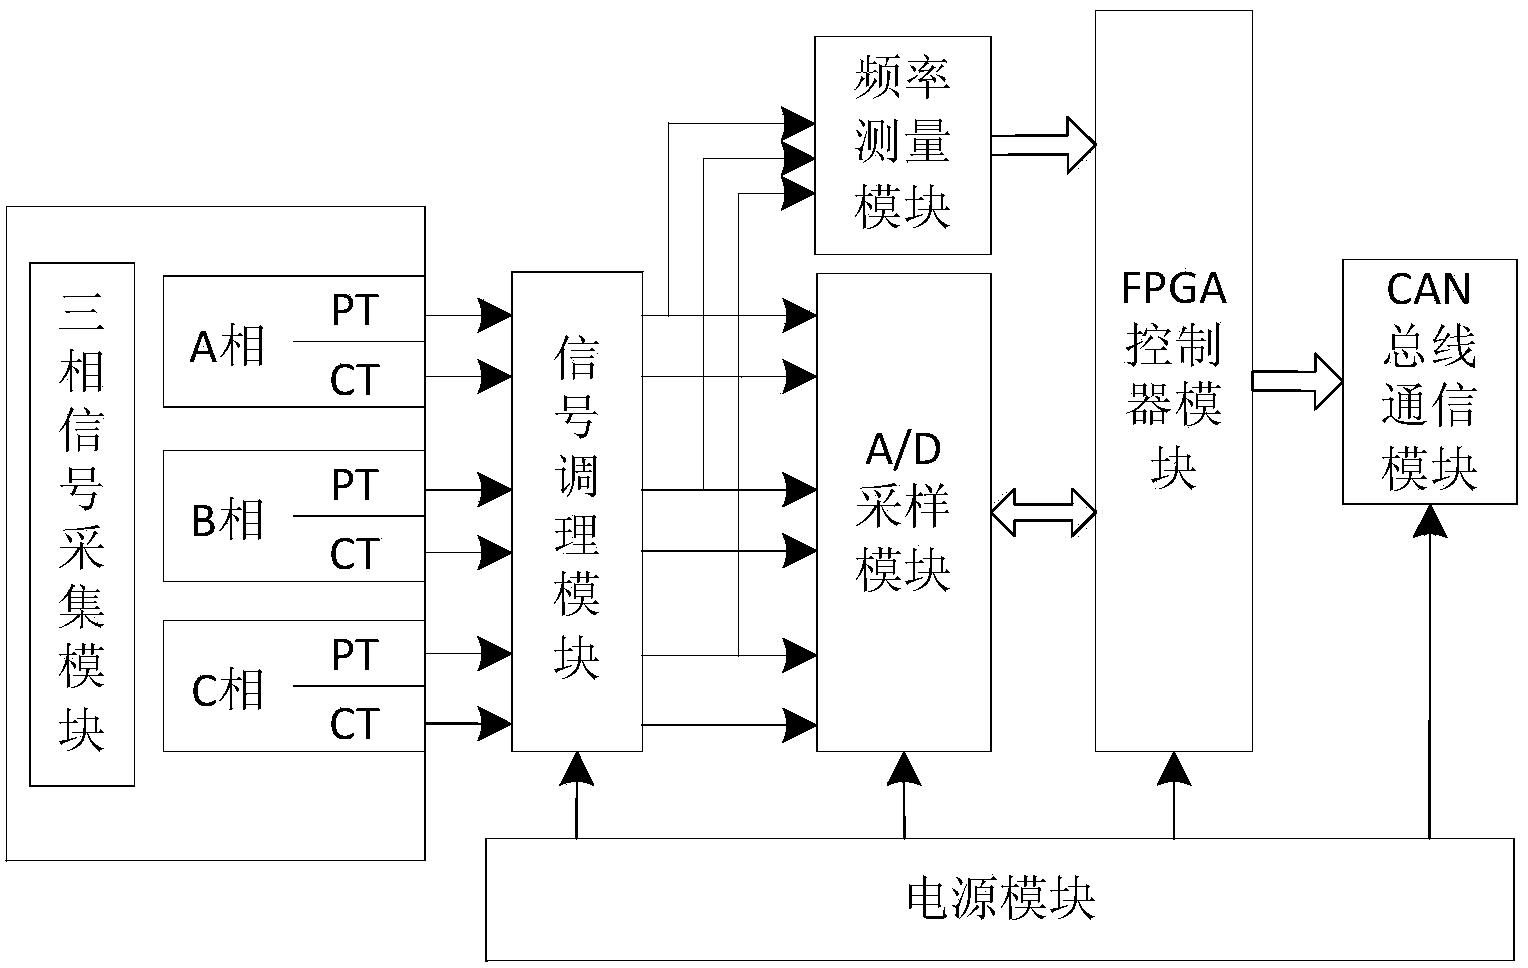 Electrical quantity transducer